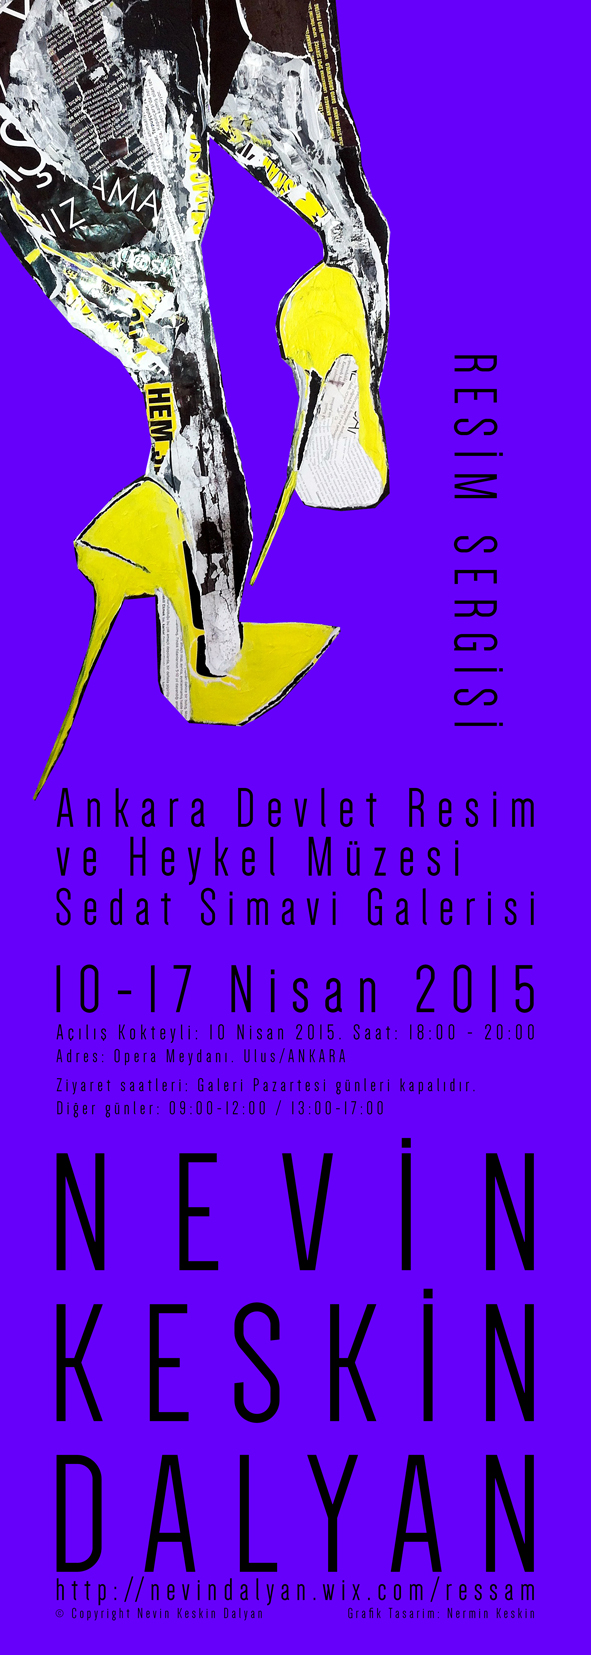 Sanat molası: Ankara'da Nevin Keskin Dalyan sergisi